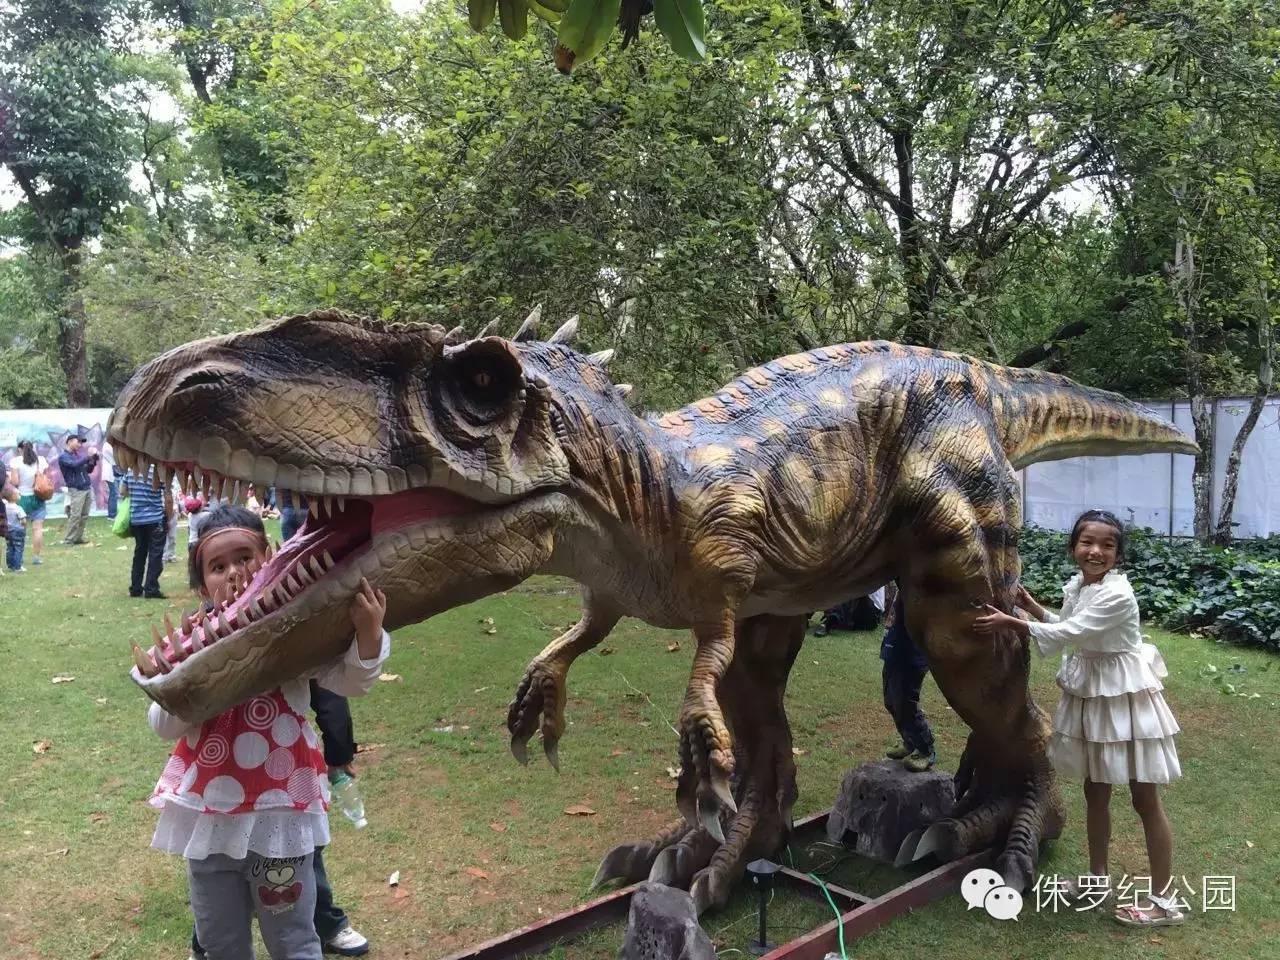 潍坊恐龙主题公园5月28正式开园!900张门票免费送,约